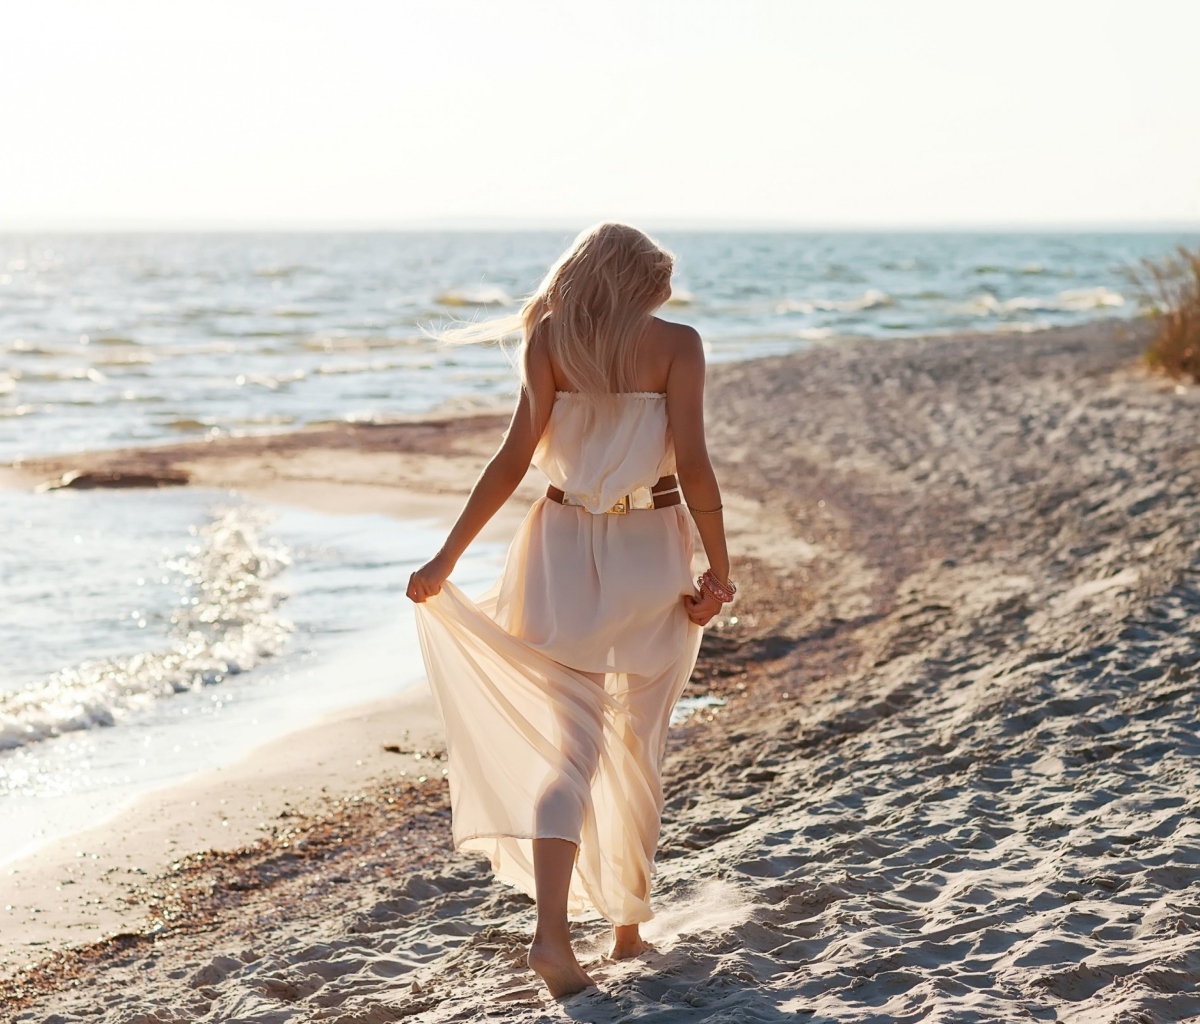 Girl In White Dress On Beach wallpaper 1200x1024